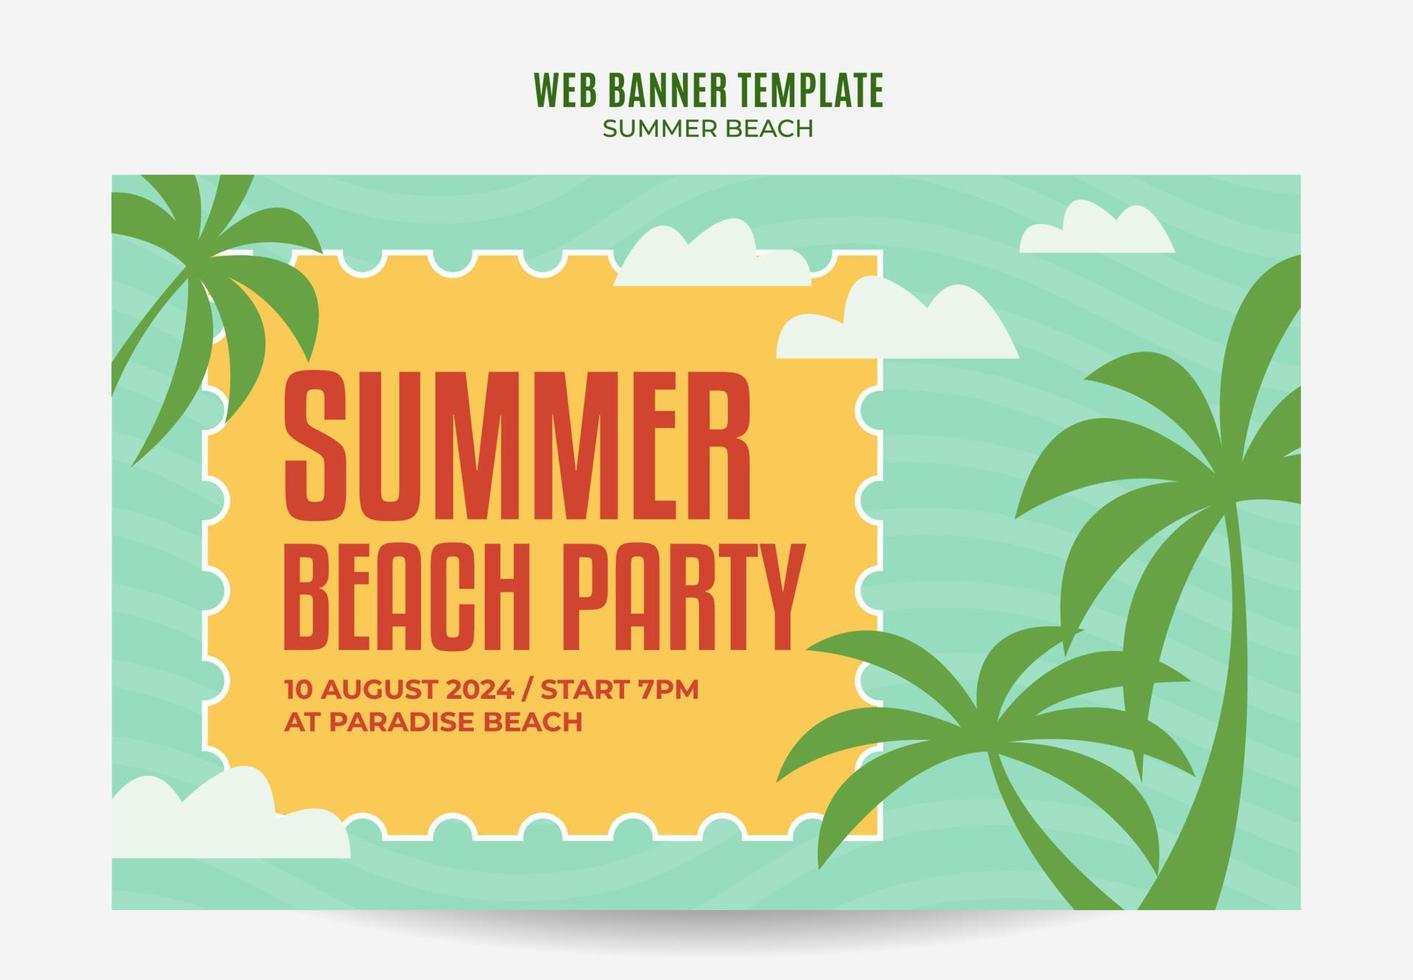 dia de verão - banner web de festa na praia para pôster de mídia social, banner, área espacial e plano de fundo vetor